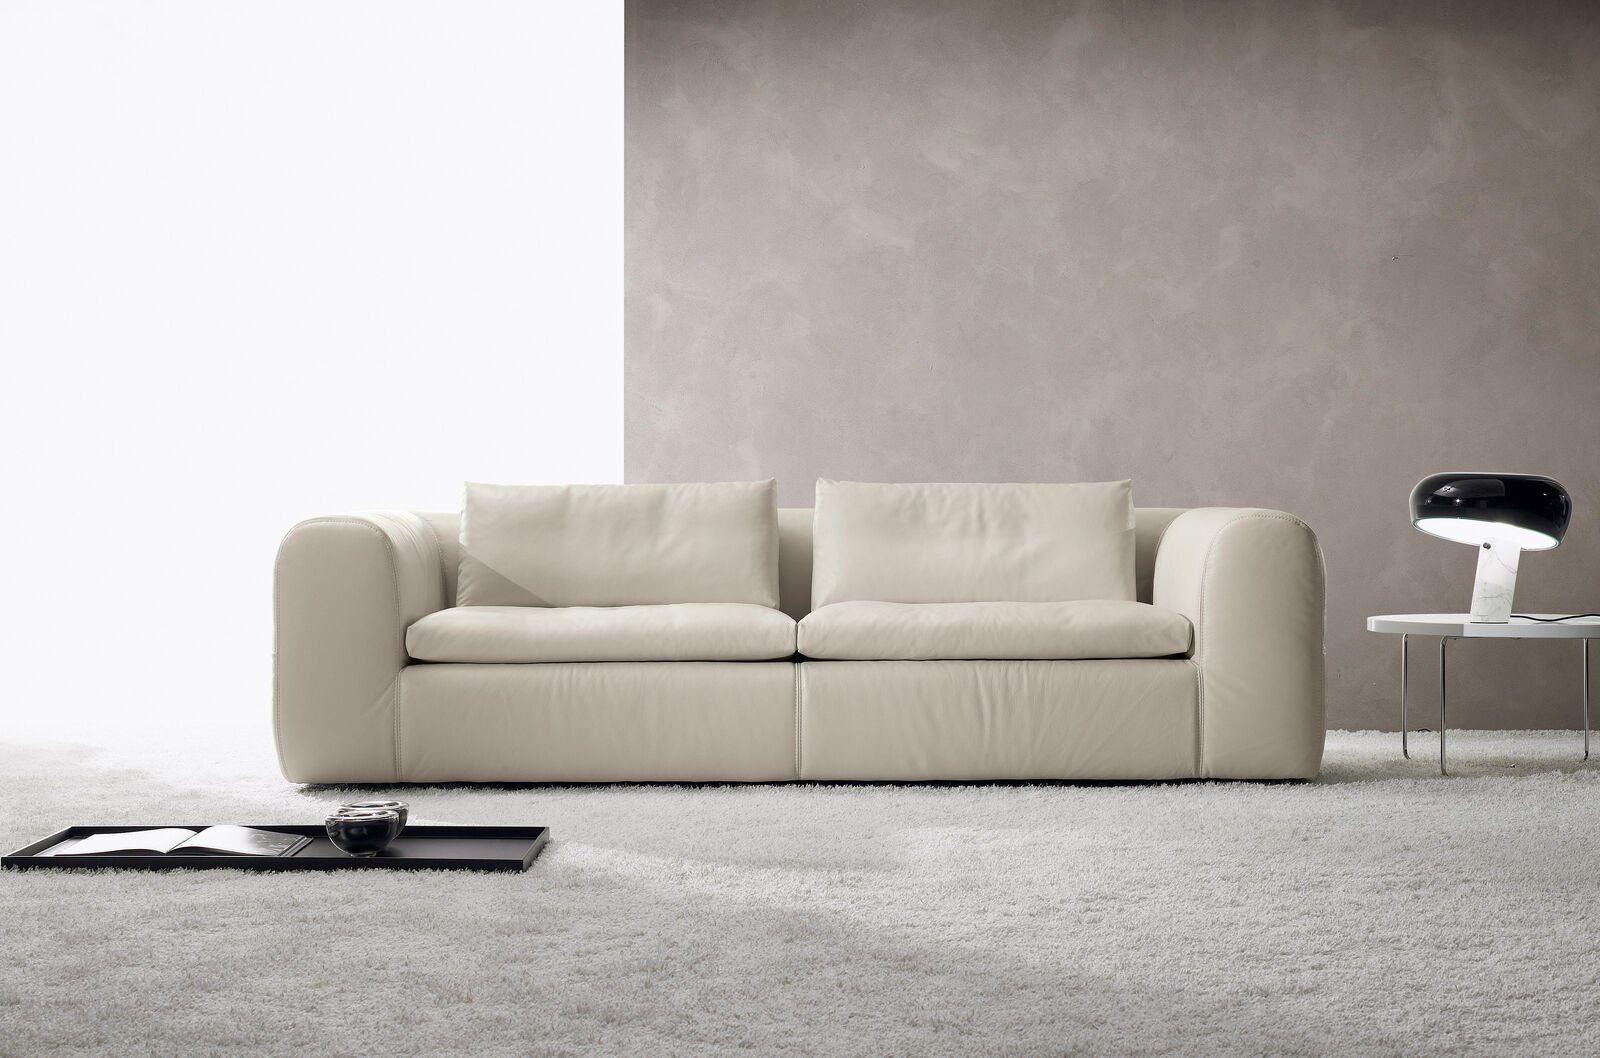 JVmoebel 3-Sitzer Sofa 3 Sitz Möbel Leder Weiß Dreisitzer Sofas Luxus Wohnzimmer